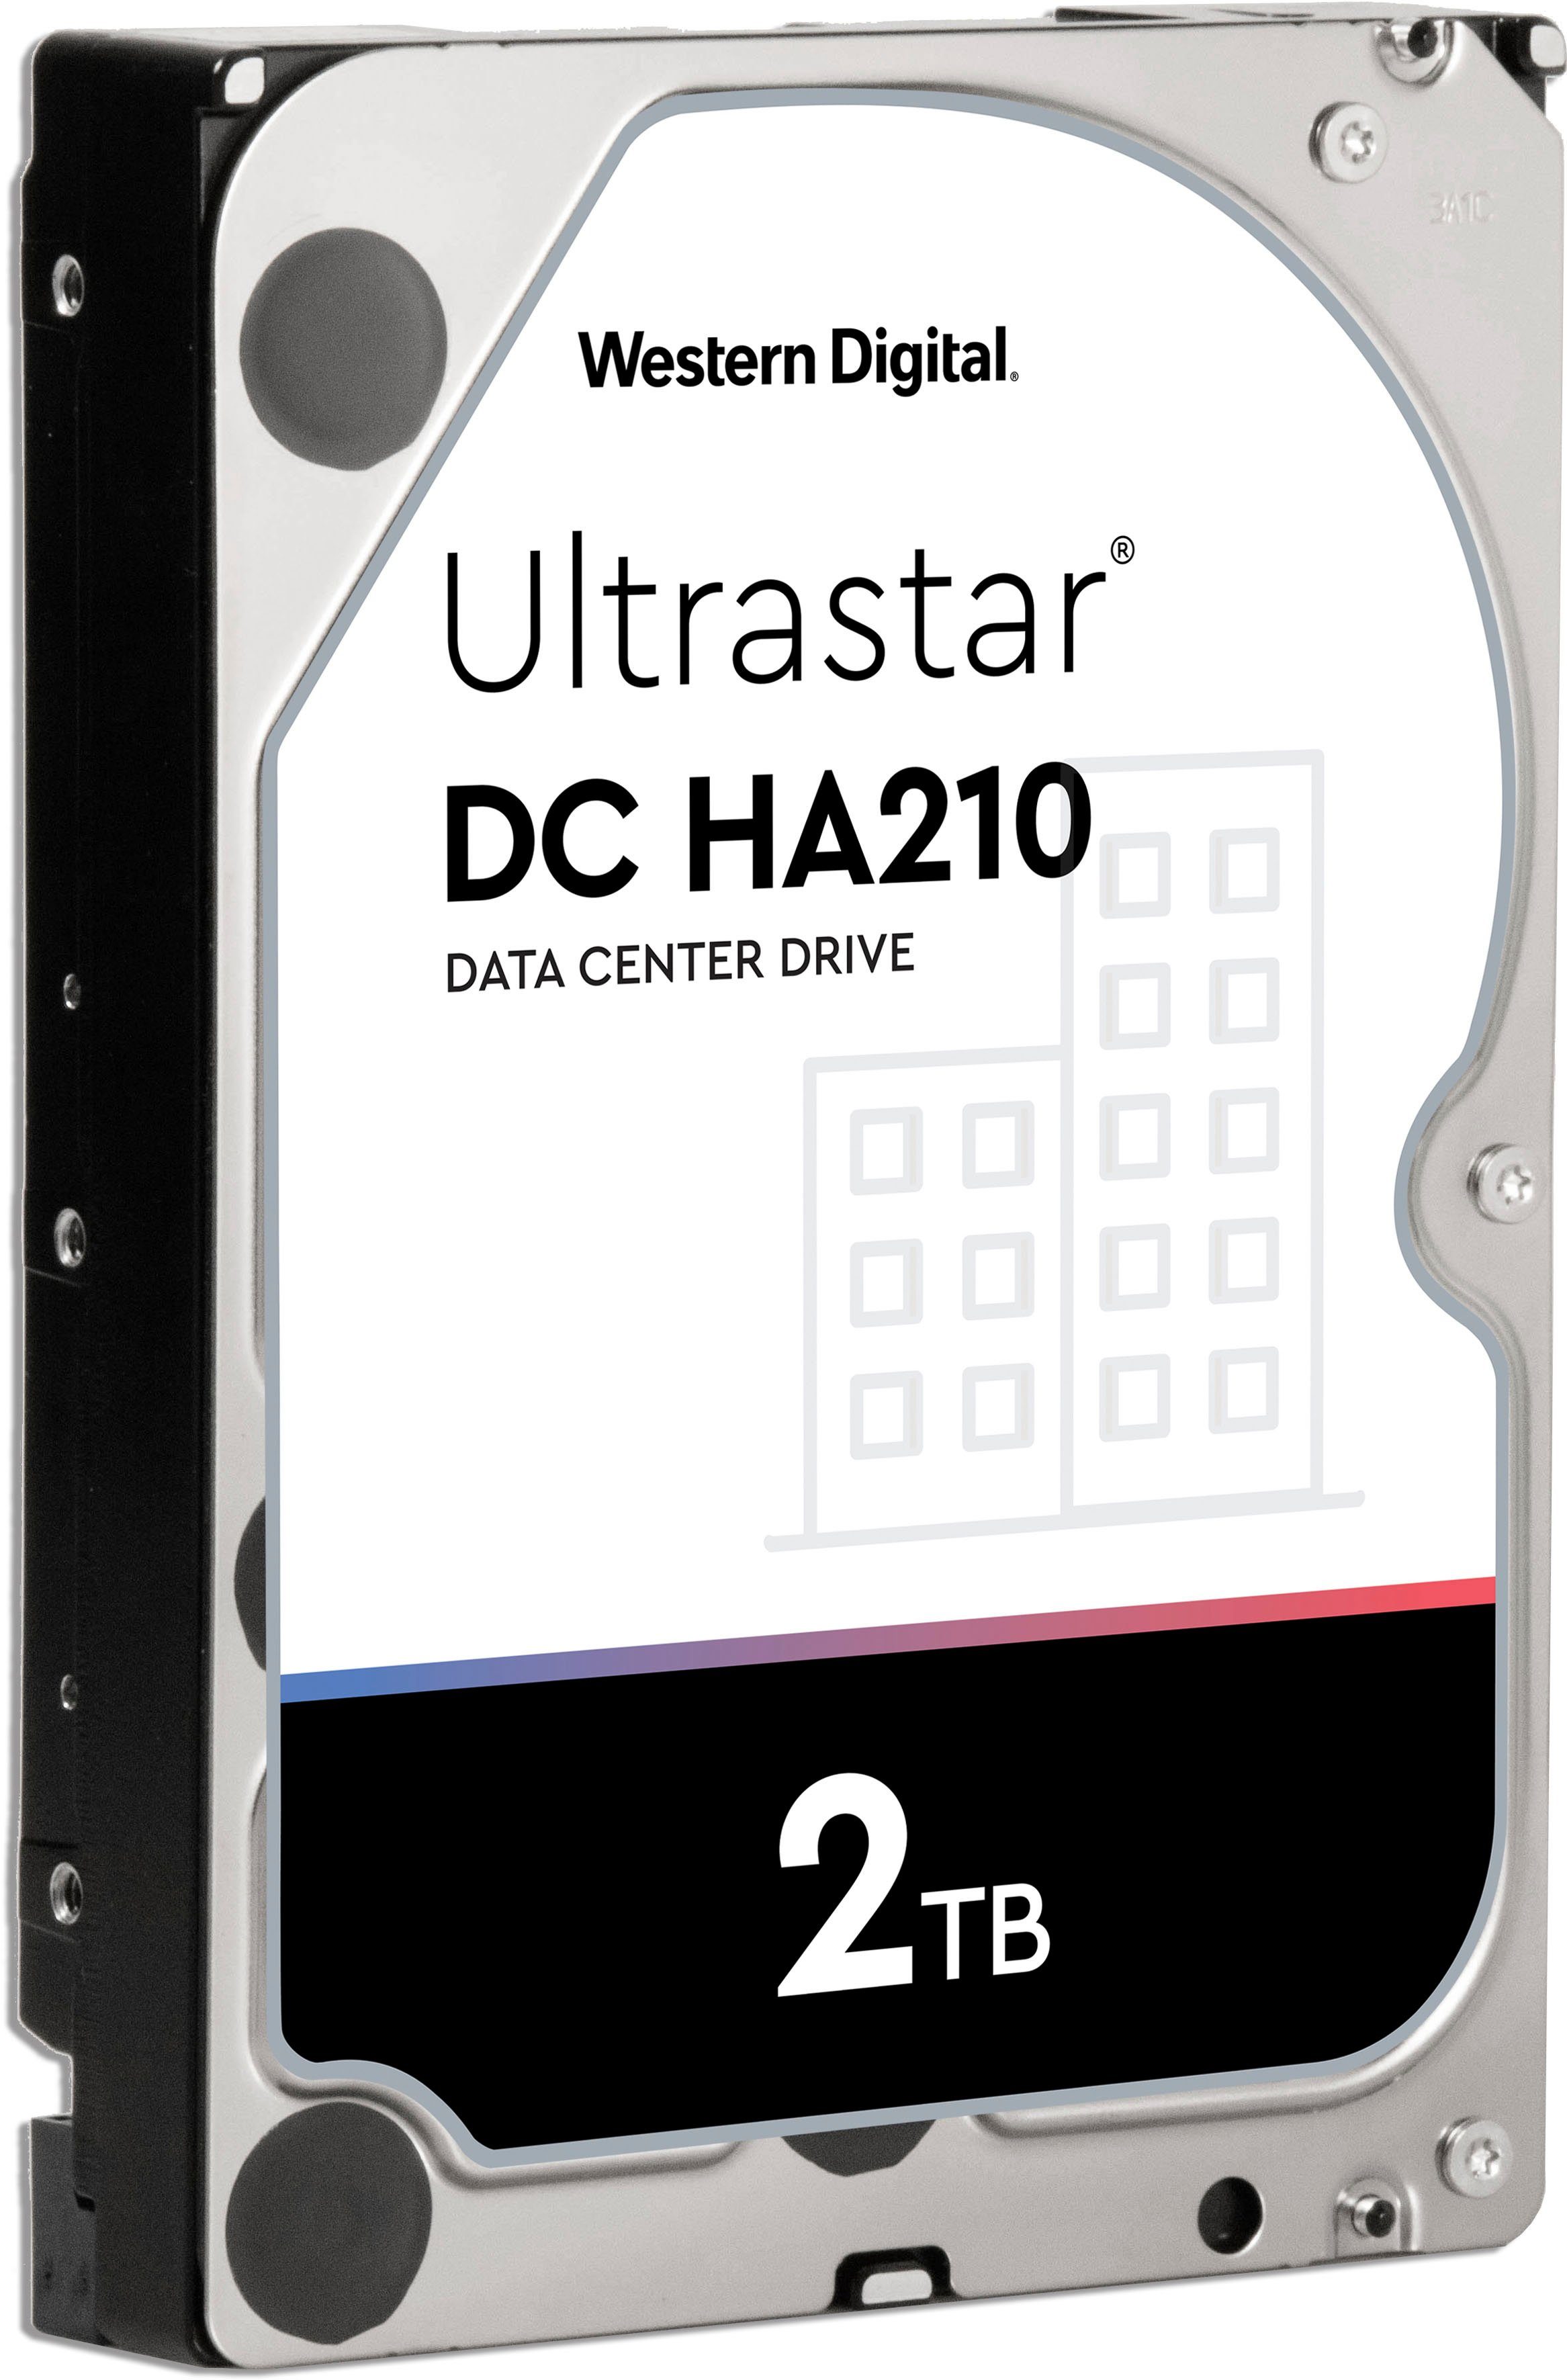 Western Digital Ultrastar DC HA210 2TB HDD-Festplatte (2 TB) 3,5", Bulk